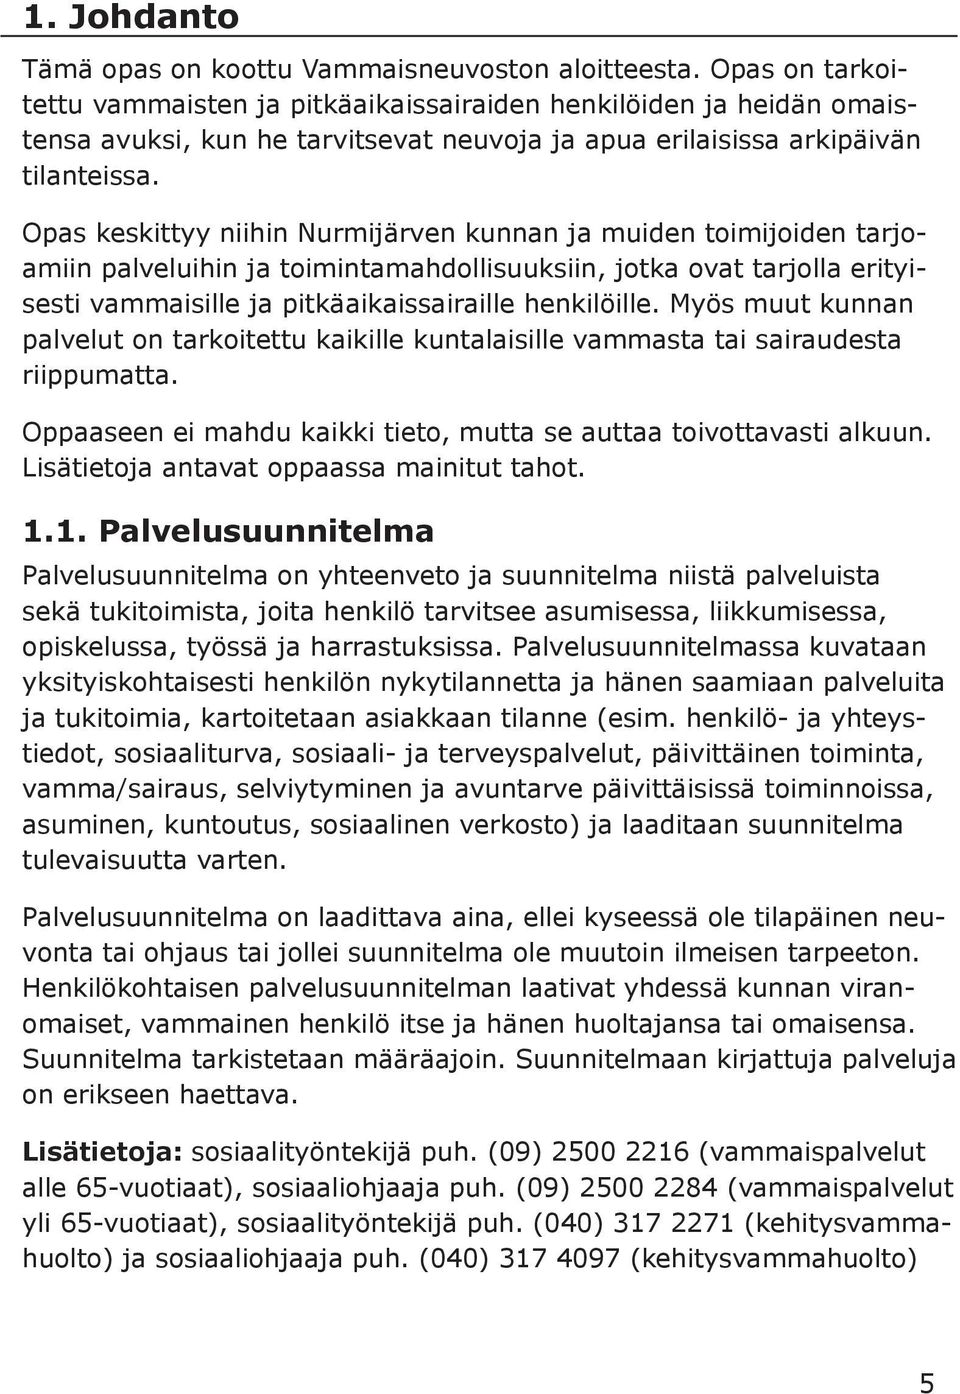 Opas keskittyy niihin Nurmijärven kunnan ja muiden toimijoiden tarjoamiin palveluihin ja toimintamahdollisuuksiin, jotka ovat tarjolla erityisesti vammaisille ja pitkäaikaissairaille henkilöille.